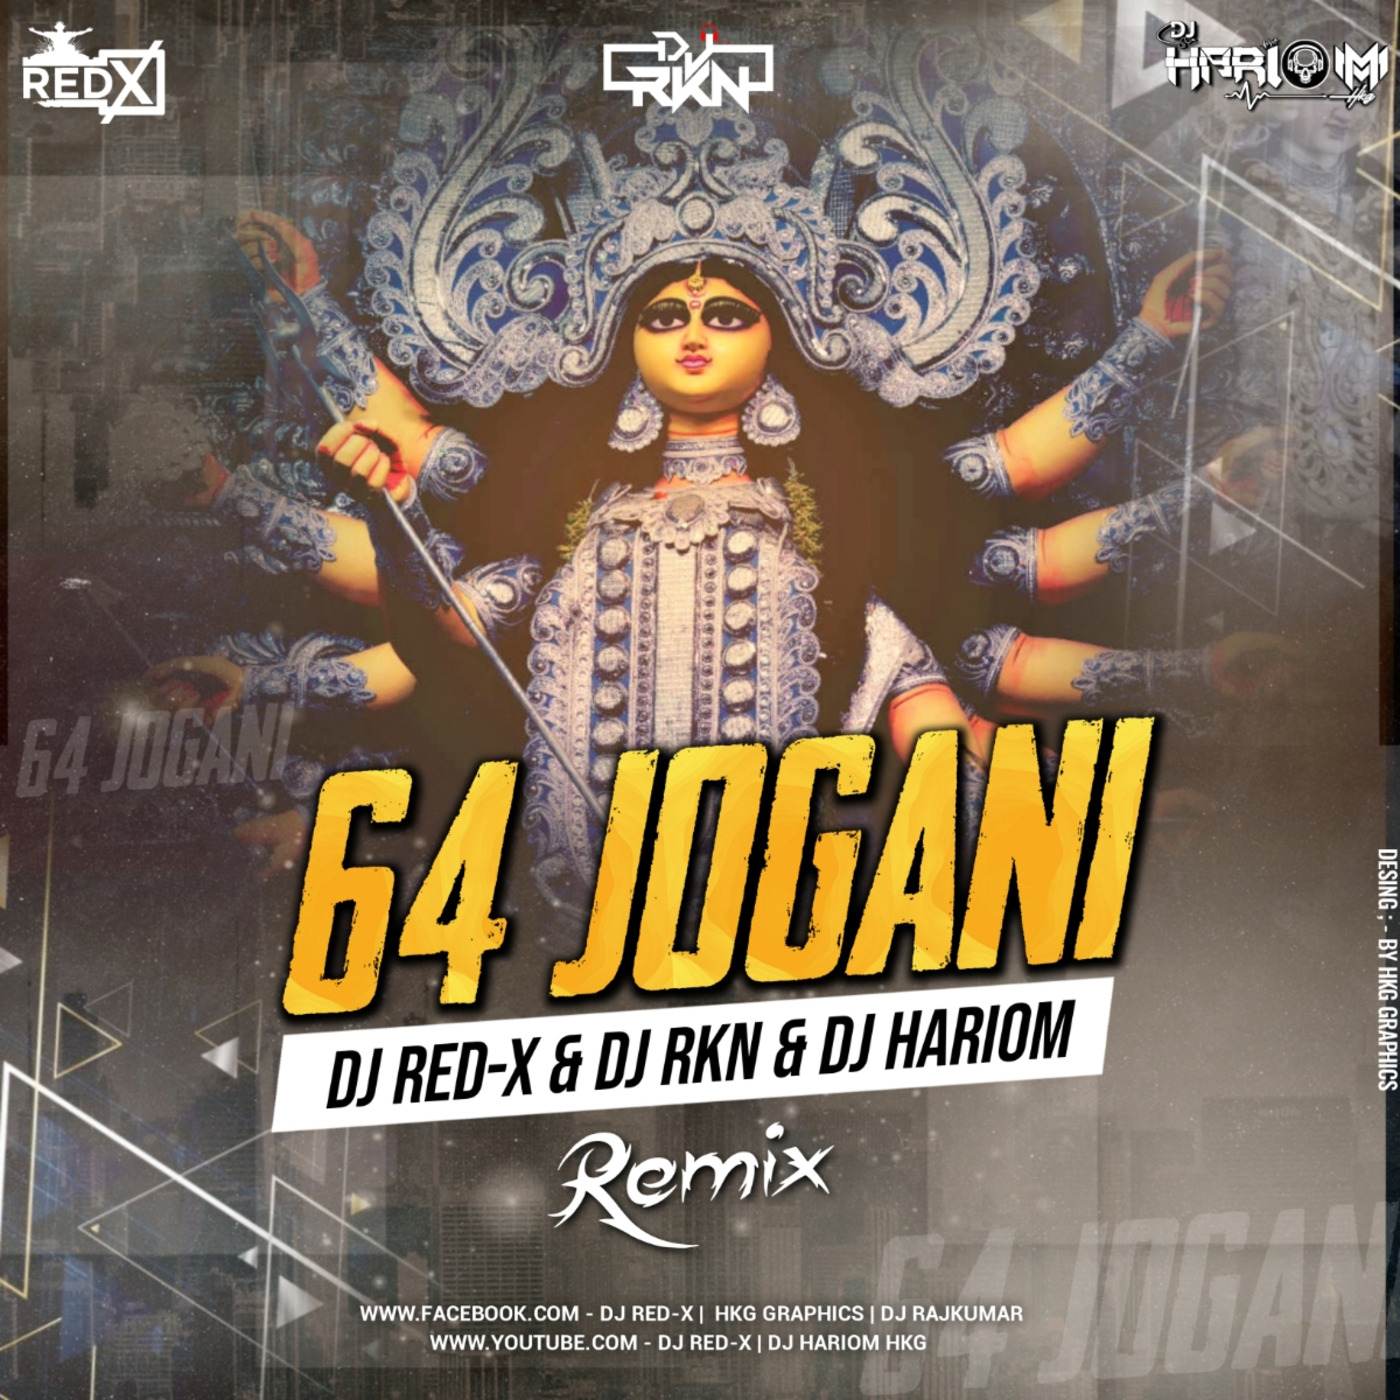 64 Joghani Re Remix Dj Red X Dj RKN Dj Hariom